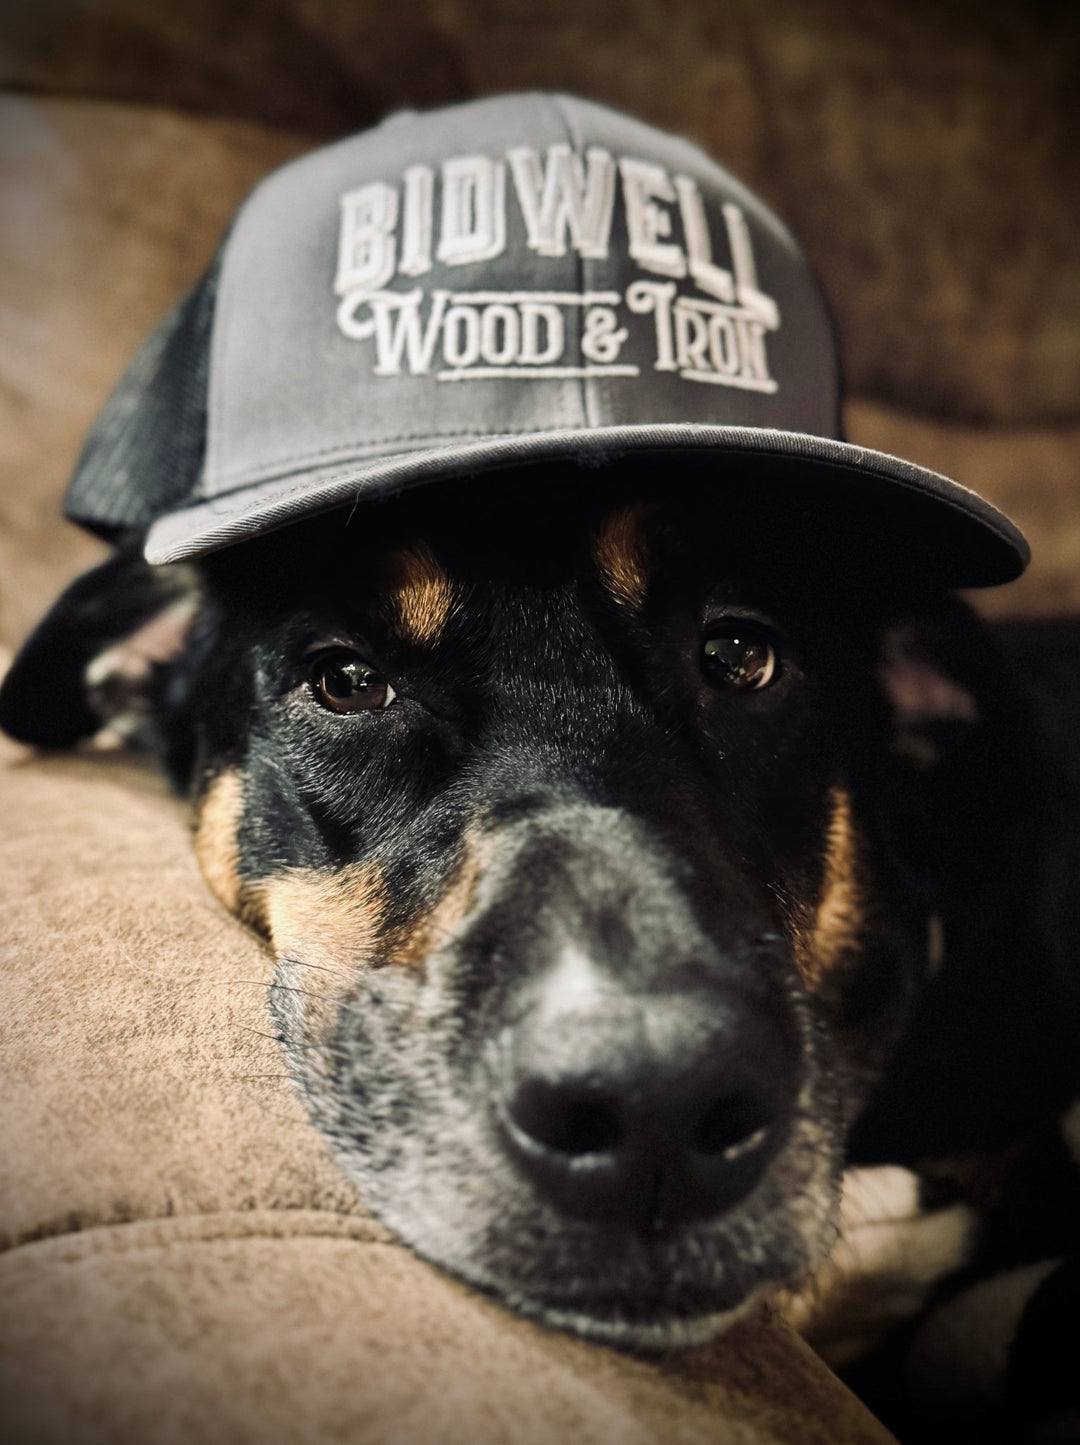 Bidwell Wood & Iron Hats - Bidwell Wood & Iron